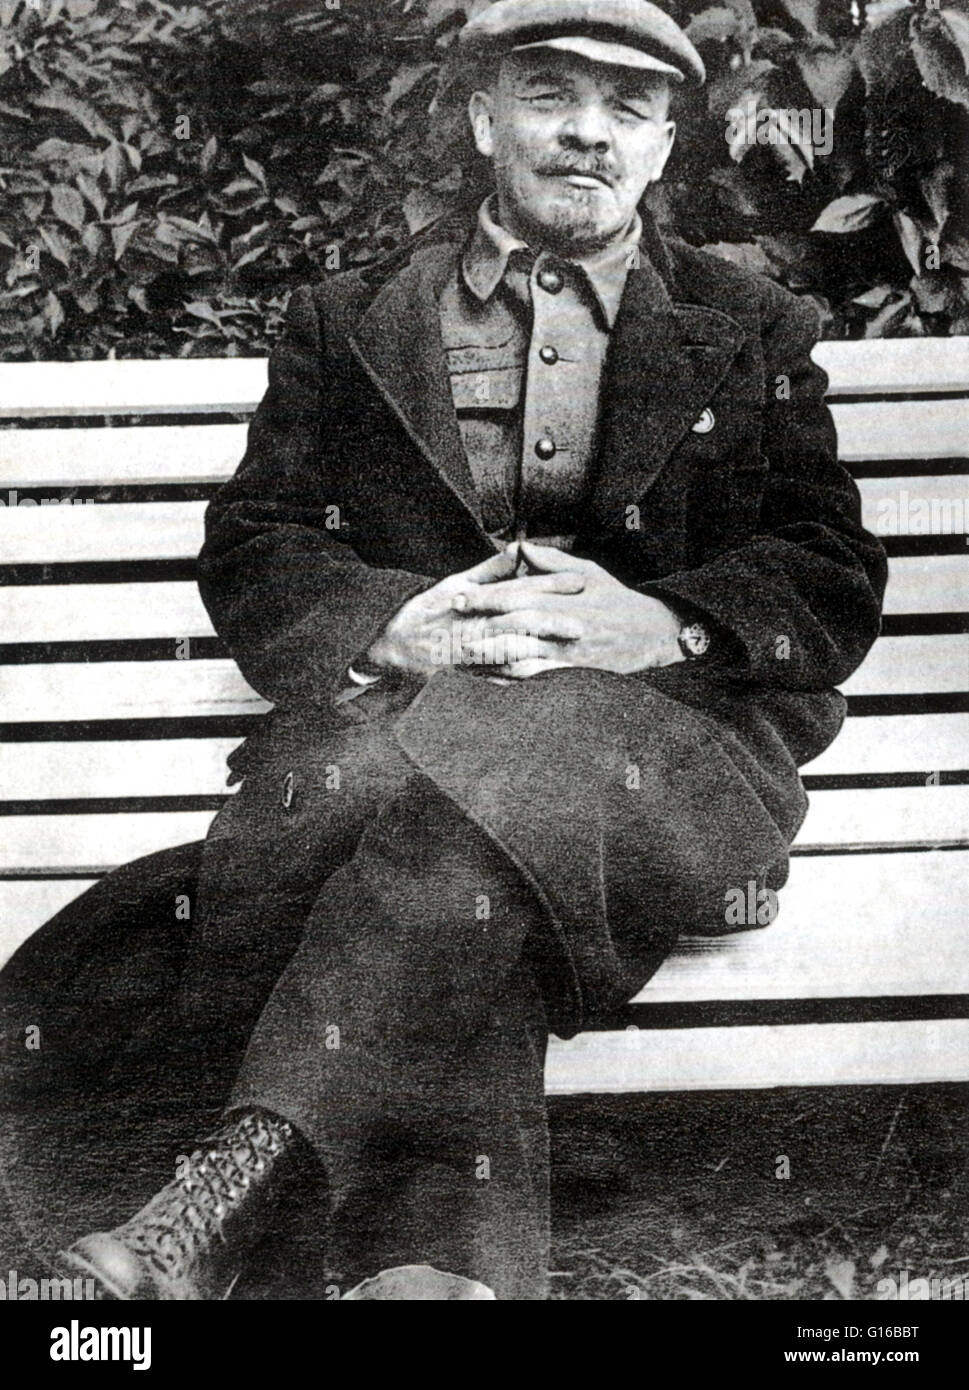 Lenin, sitzen auf einer Bank am Gorki, 1922. Vladimir Ilyich Lenin (22. April 1870 - 21. Januar 1924) war ein russischer marxistischer revolutionär, Politiker, russischer Staatsmann und marxistischer Theoretiker. Lenin war der erste Premierminister der Sowjetunion. In 1 Stockfoto